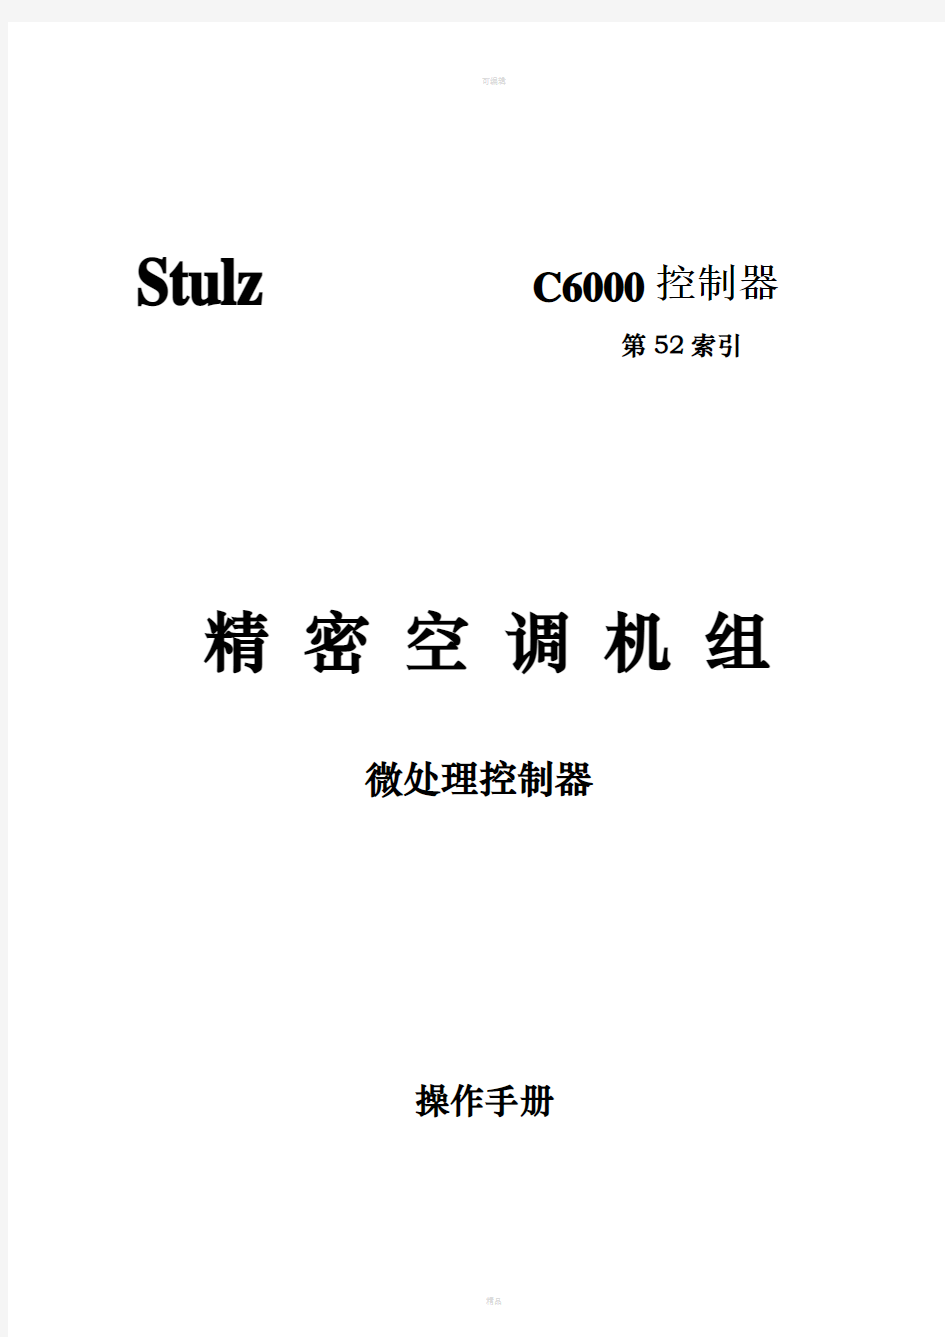 c6000中文说明书-精密空调机组微处理控制器操作手册